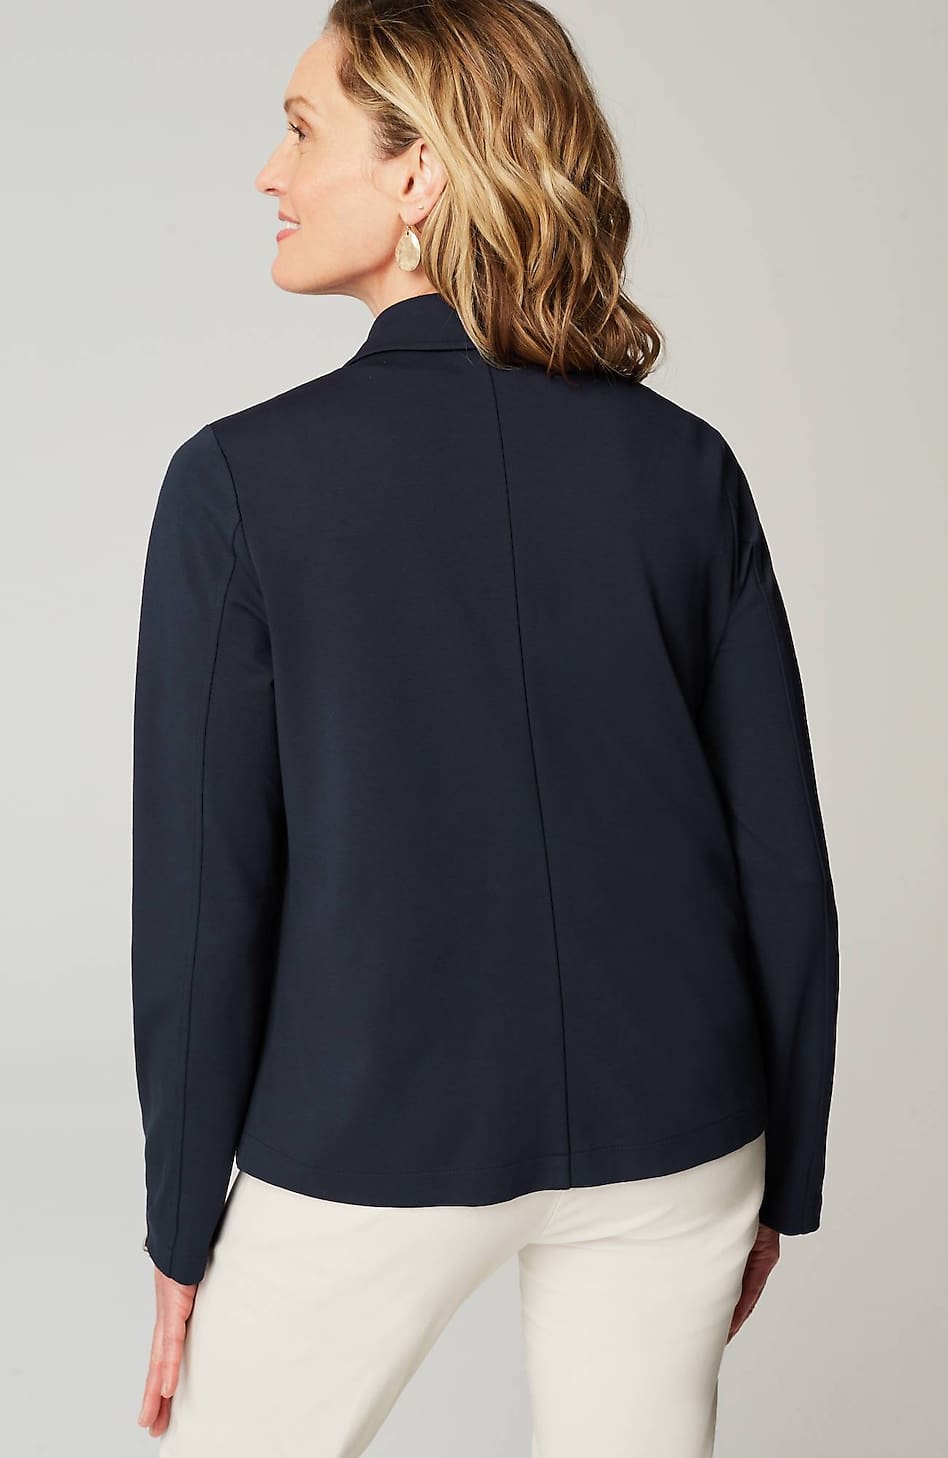 J.Jill Lightweight Jacket Size XL Cotton Tan Button Up - $19 - From Brianna